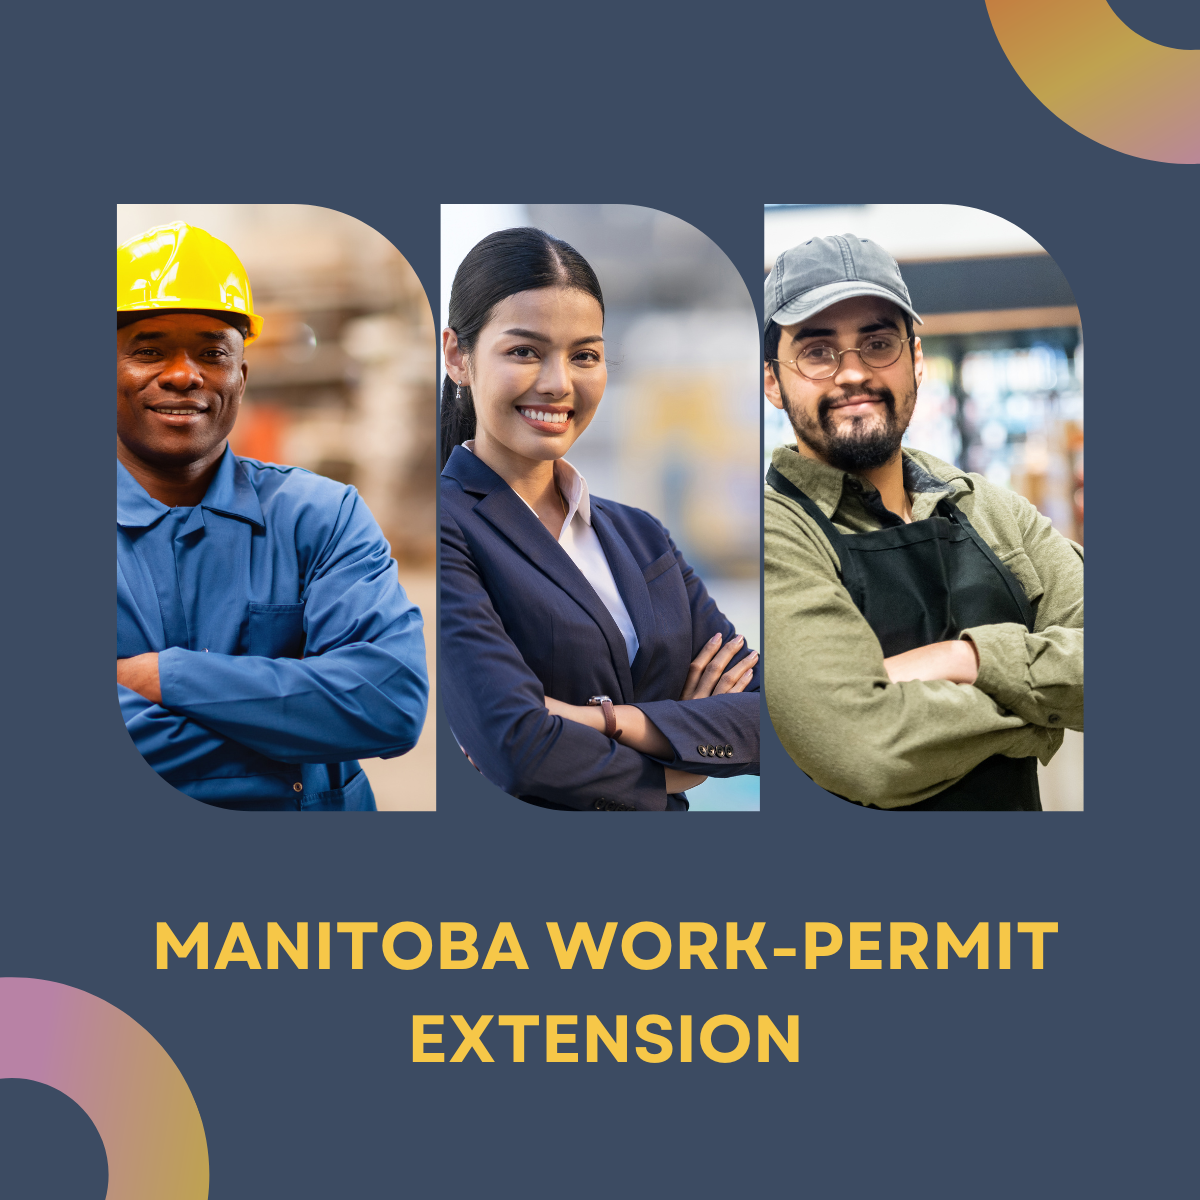 Manitoba Work-permit Extension